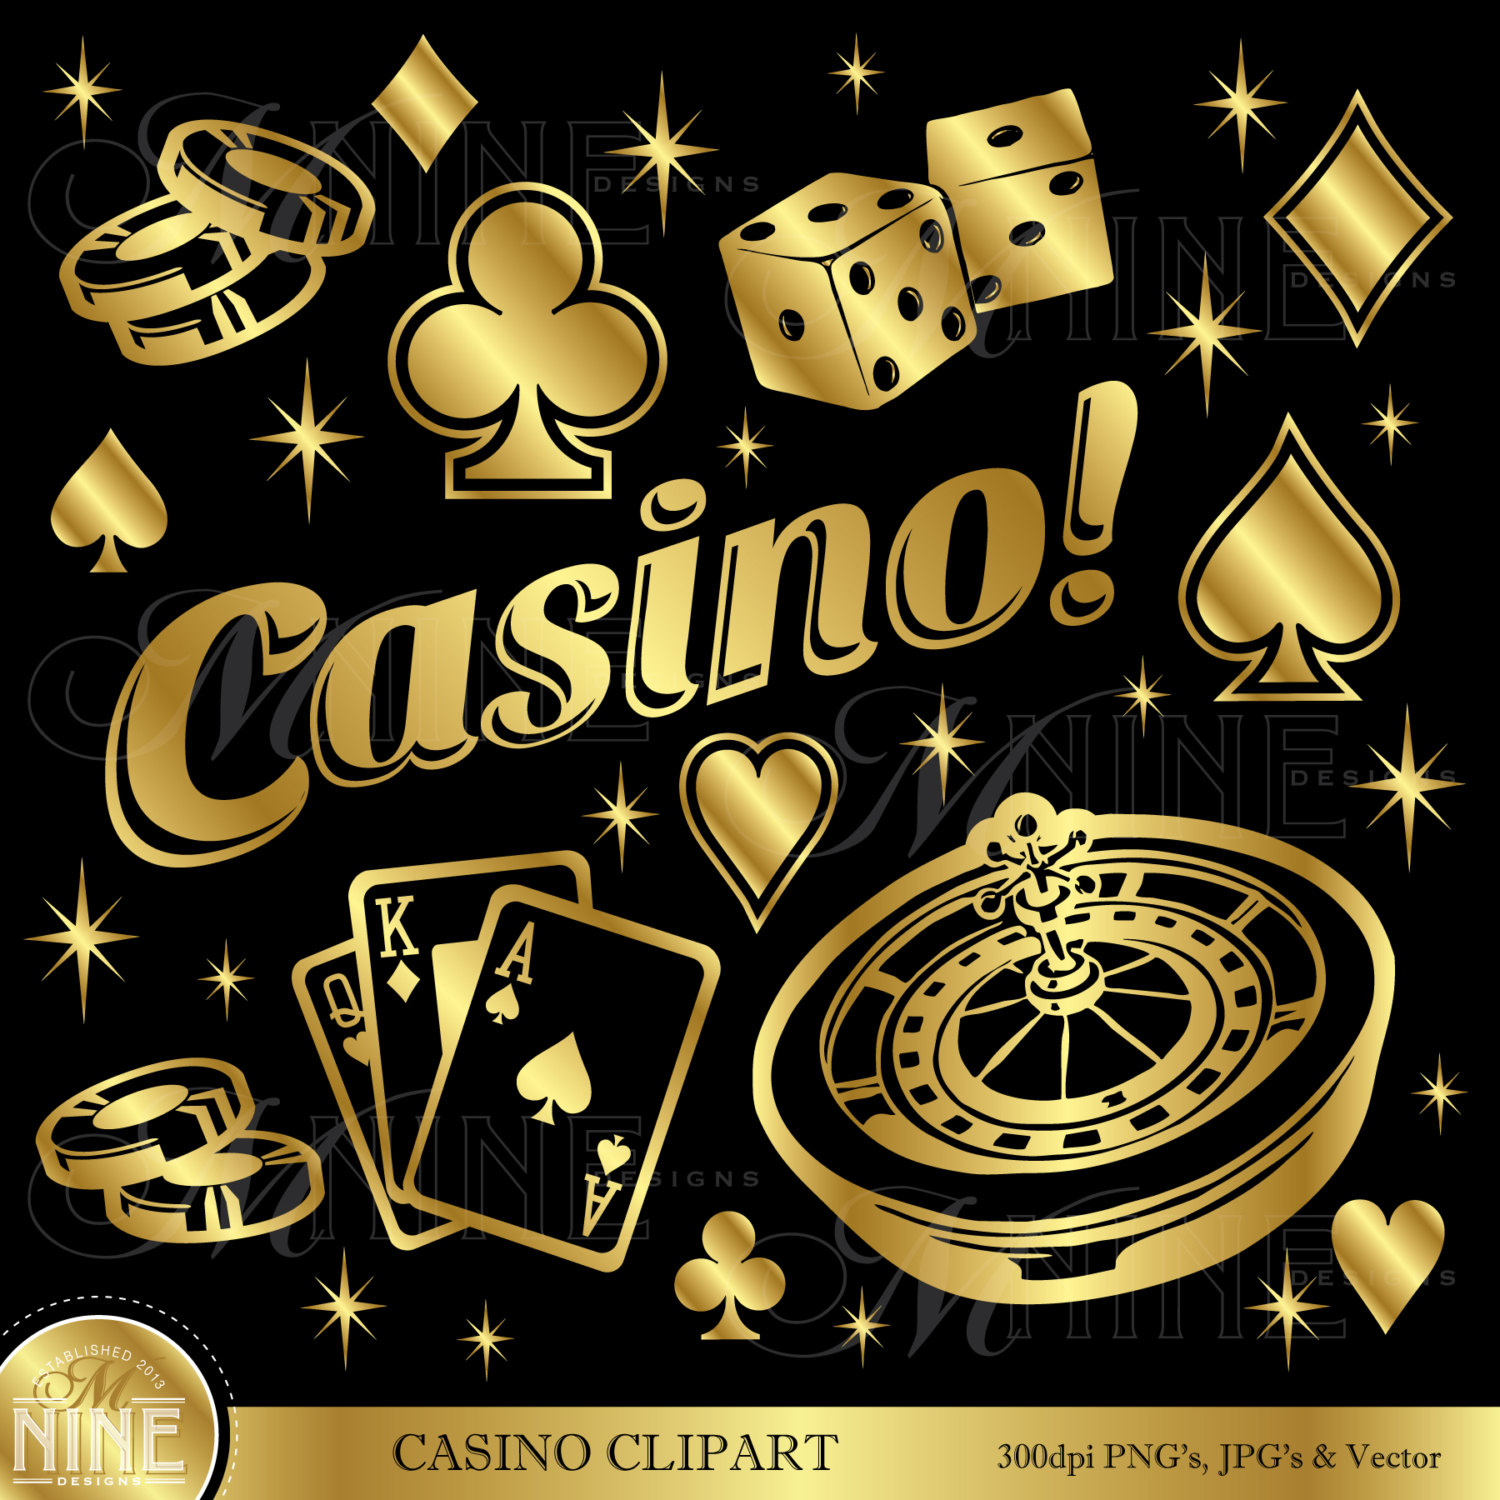 Cherry gold casino no deposit bonus code 2019